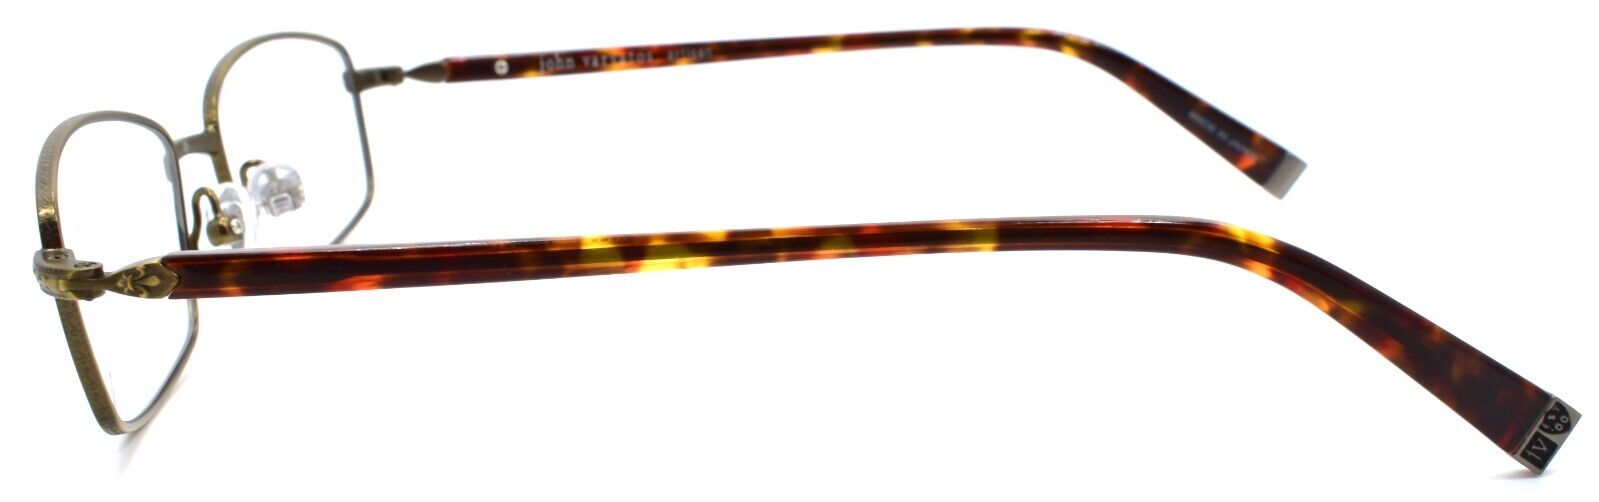 3-John Varvatos V150 Men's Eyeglasses Frames Titanium 53-17-145 Antique Gold Japan-751286268041-IKSpecs